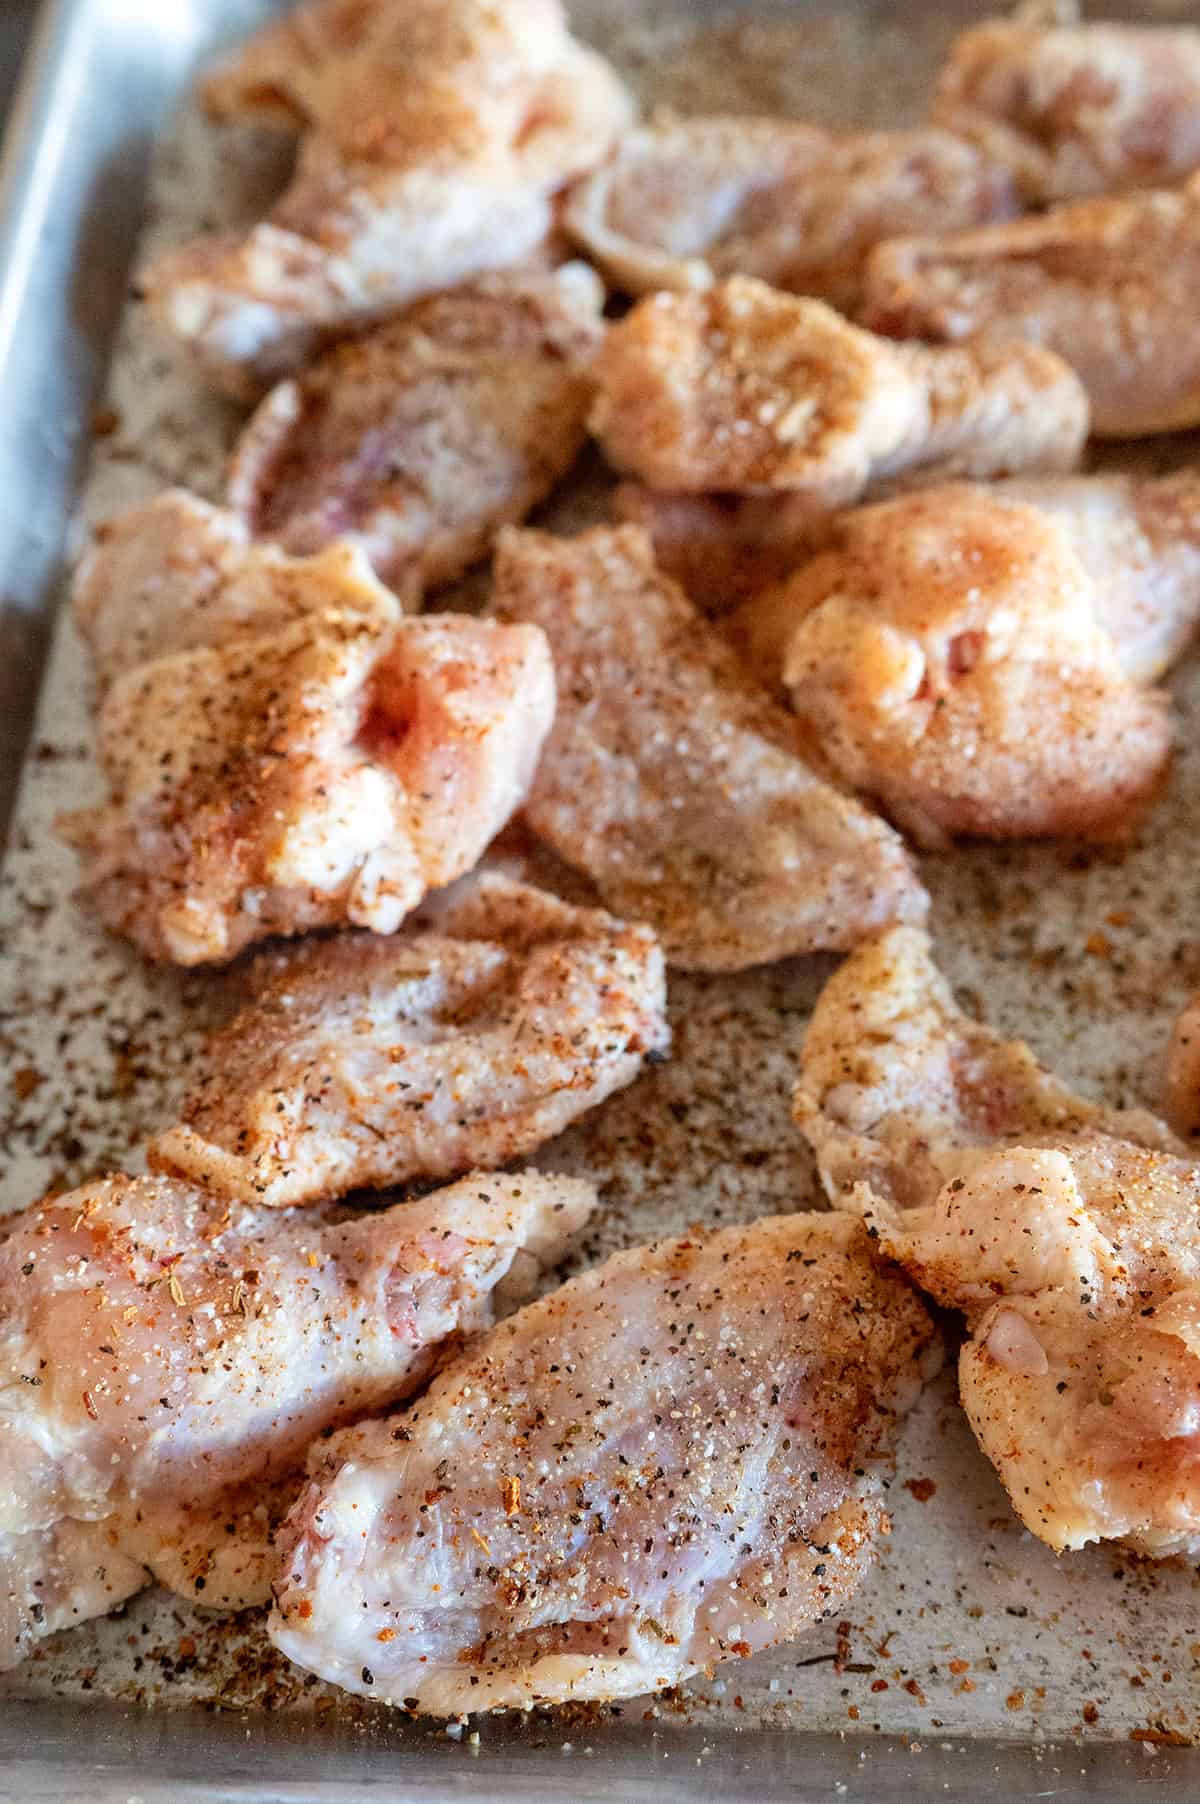 seasoned chicken wings on tray.